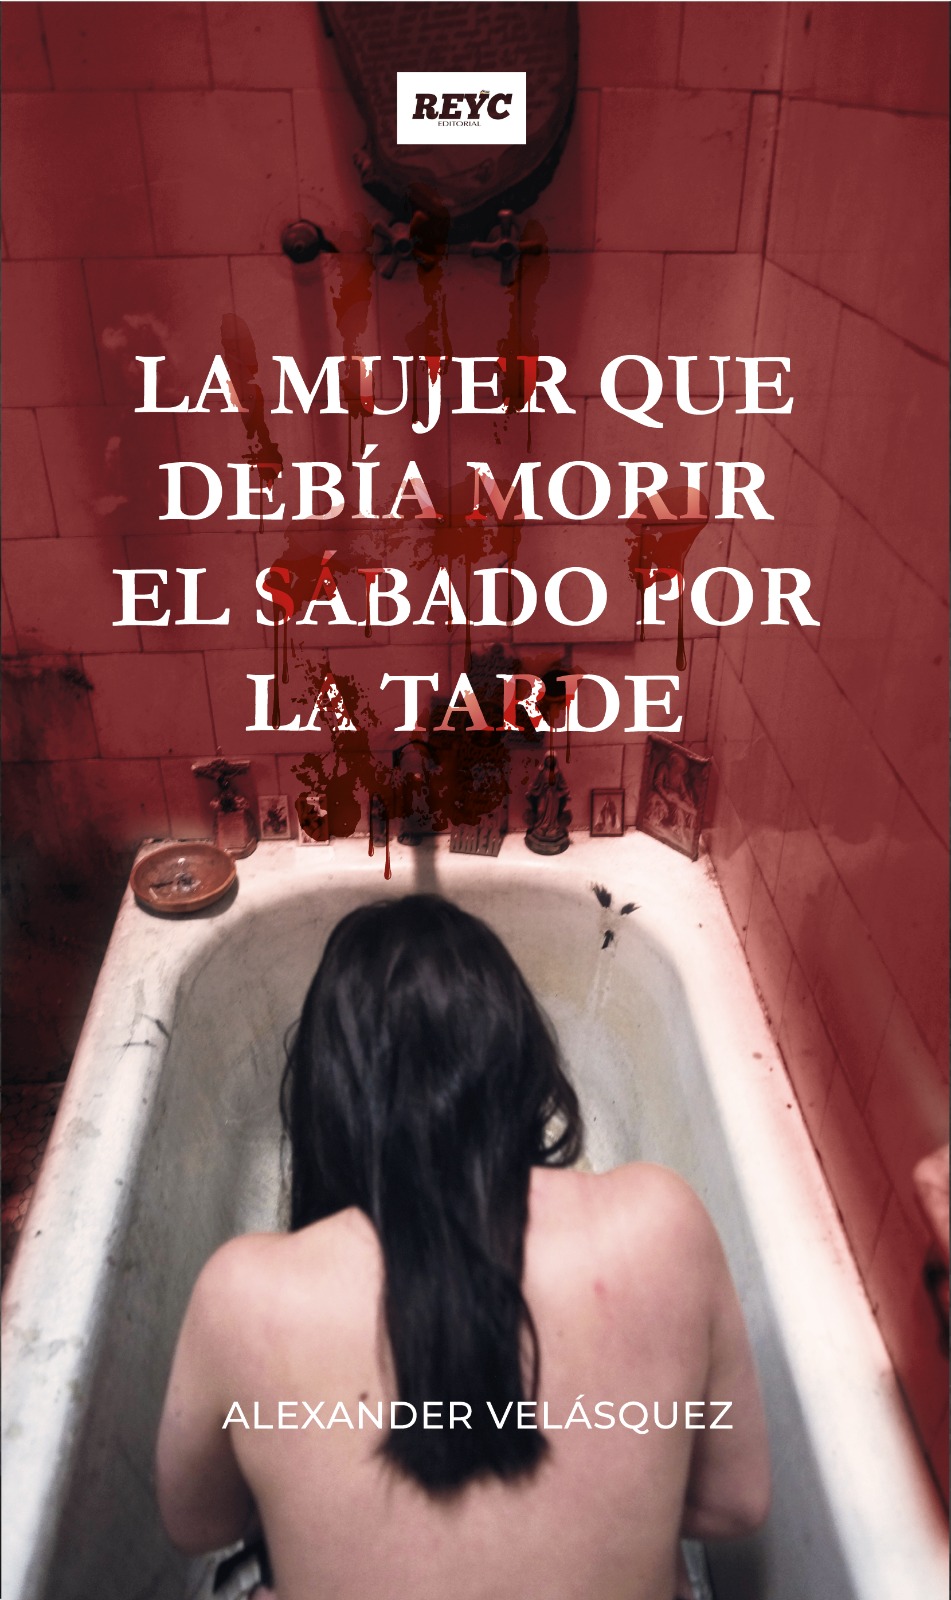 “La mujer que debía morir el sábado por la tarde”, novela de Alexander Velásquez.